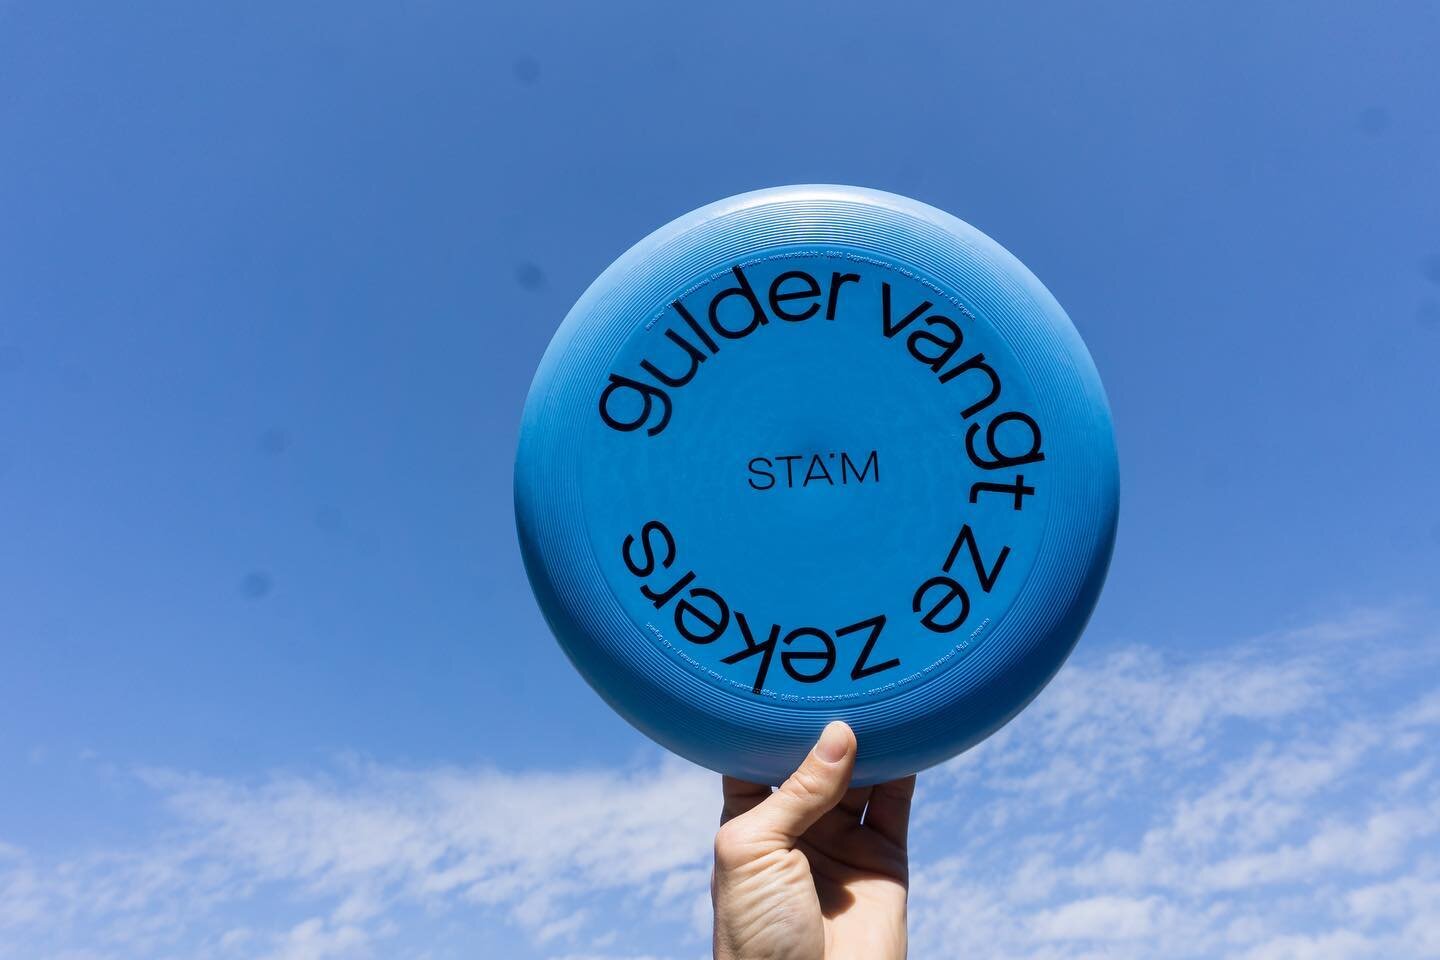 &ldquo;Gulder vangt ze zekers&rdquo;
Wolkenkrabbers frisbees nu beschikbaar bij @stamgent.
Schuun design by @bureauboschberg 
#wolkenkrabbersclub #frisbeefun